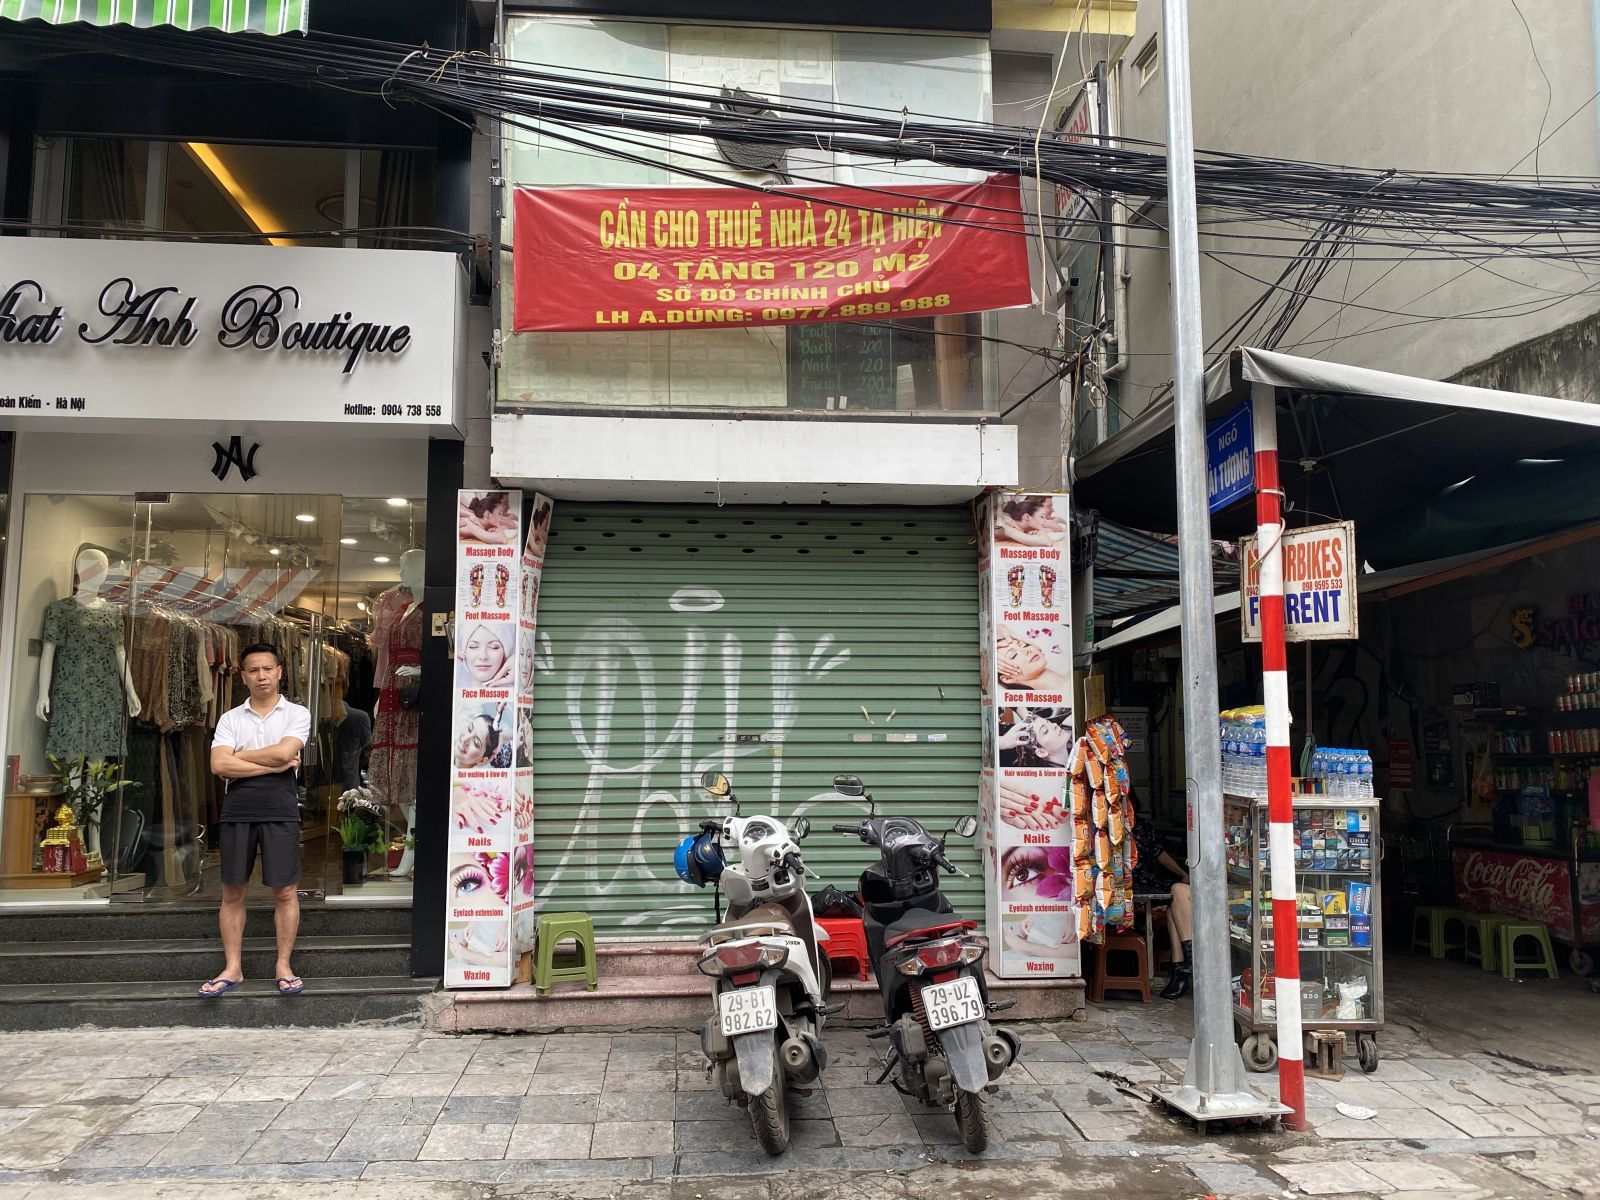 Trước đây, tuyến phố Đinh Liệt hay Tạ Hiện luôn được coi những điểm kinh doanh sầm uất nhất tại khu vực phố cổ. Nhưng đến nay nhiều hộ kinh doanh cũng phải trả lại mặt bằng.